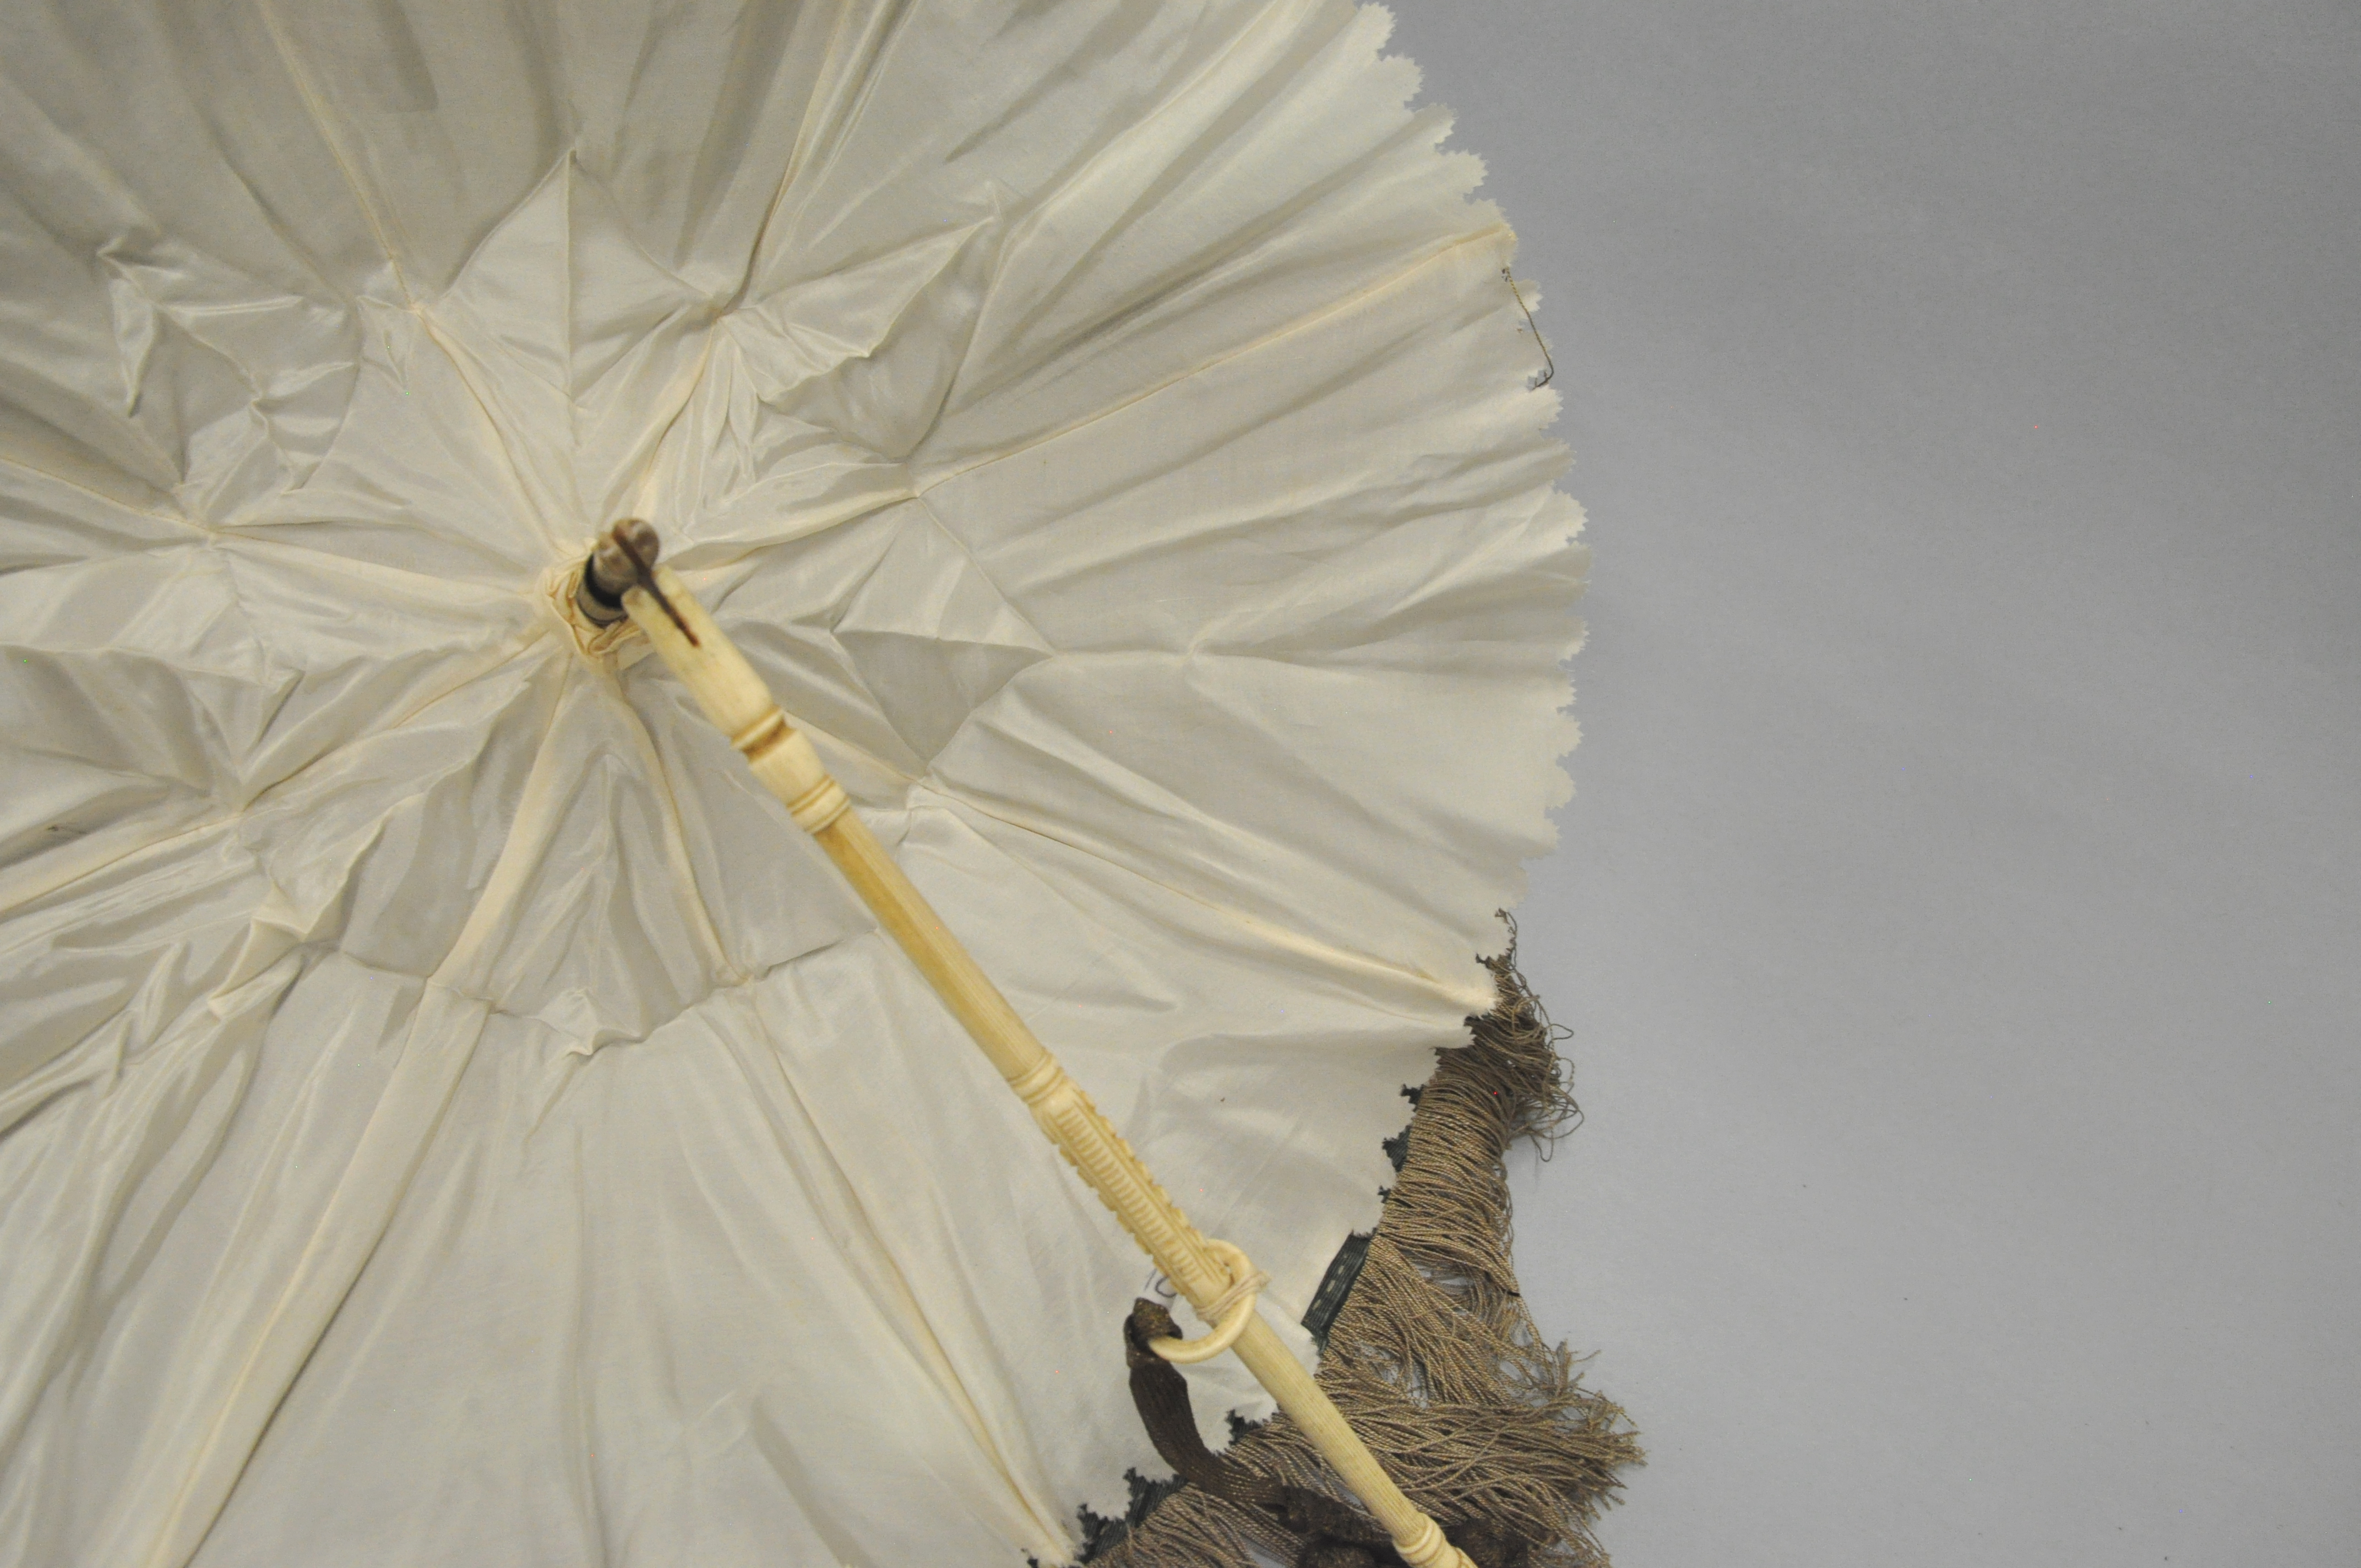 Sonnenschirm, 8-strebig, Seide mit Bogenkantenbordüre, Holz, gedrechselt, Metall; Hersteller unbekannt, 1850–1900. Bild: Museum Burg Zug